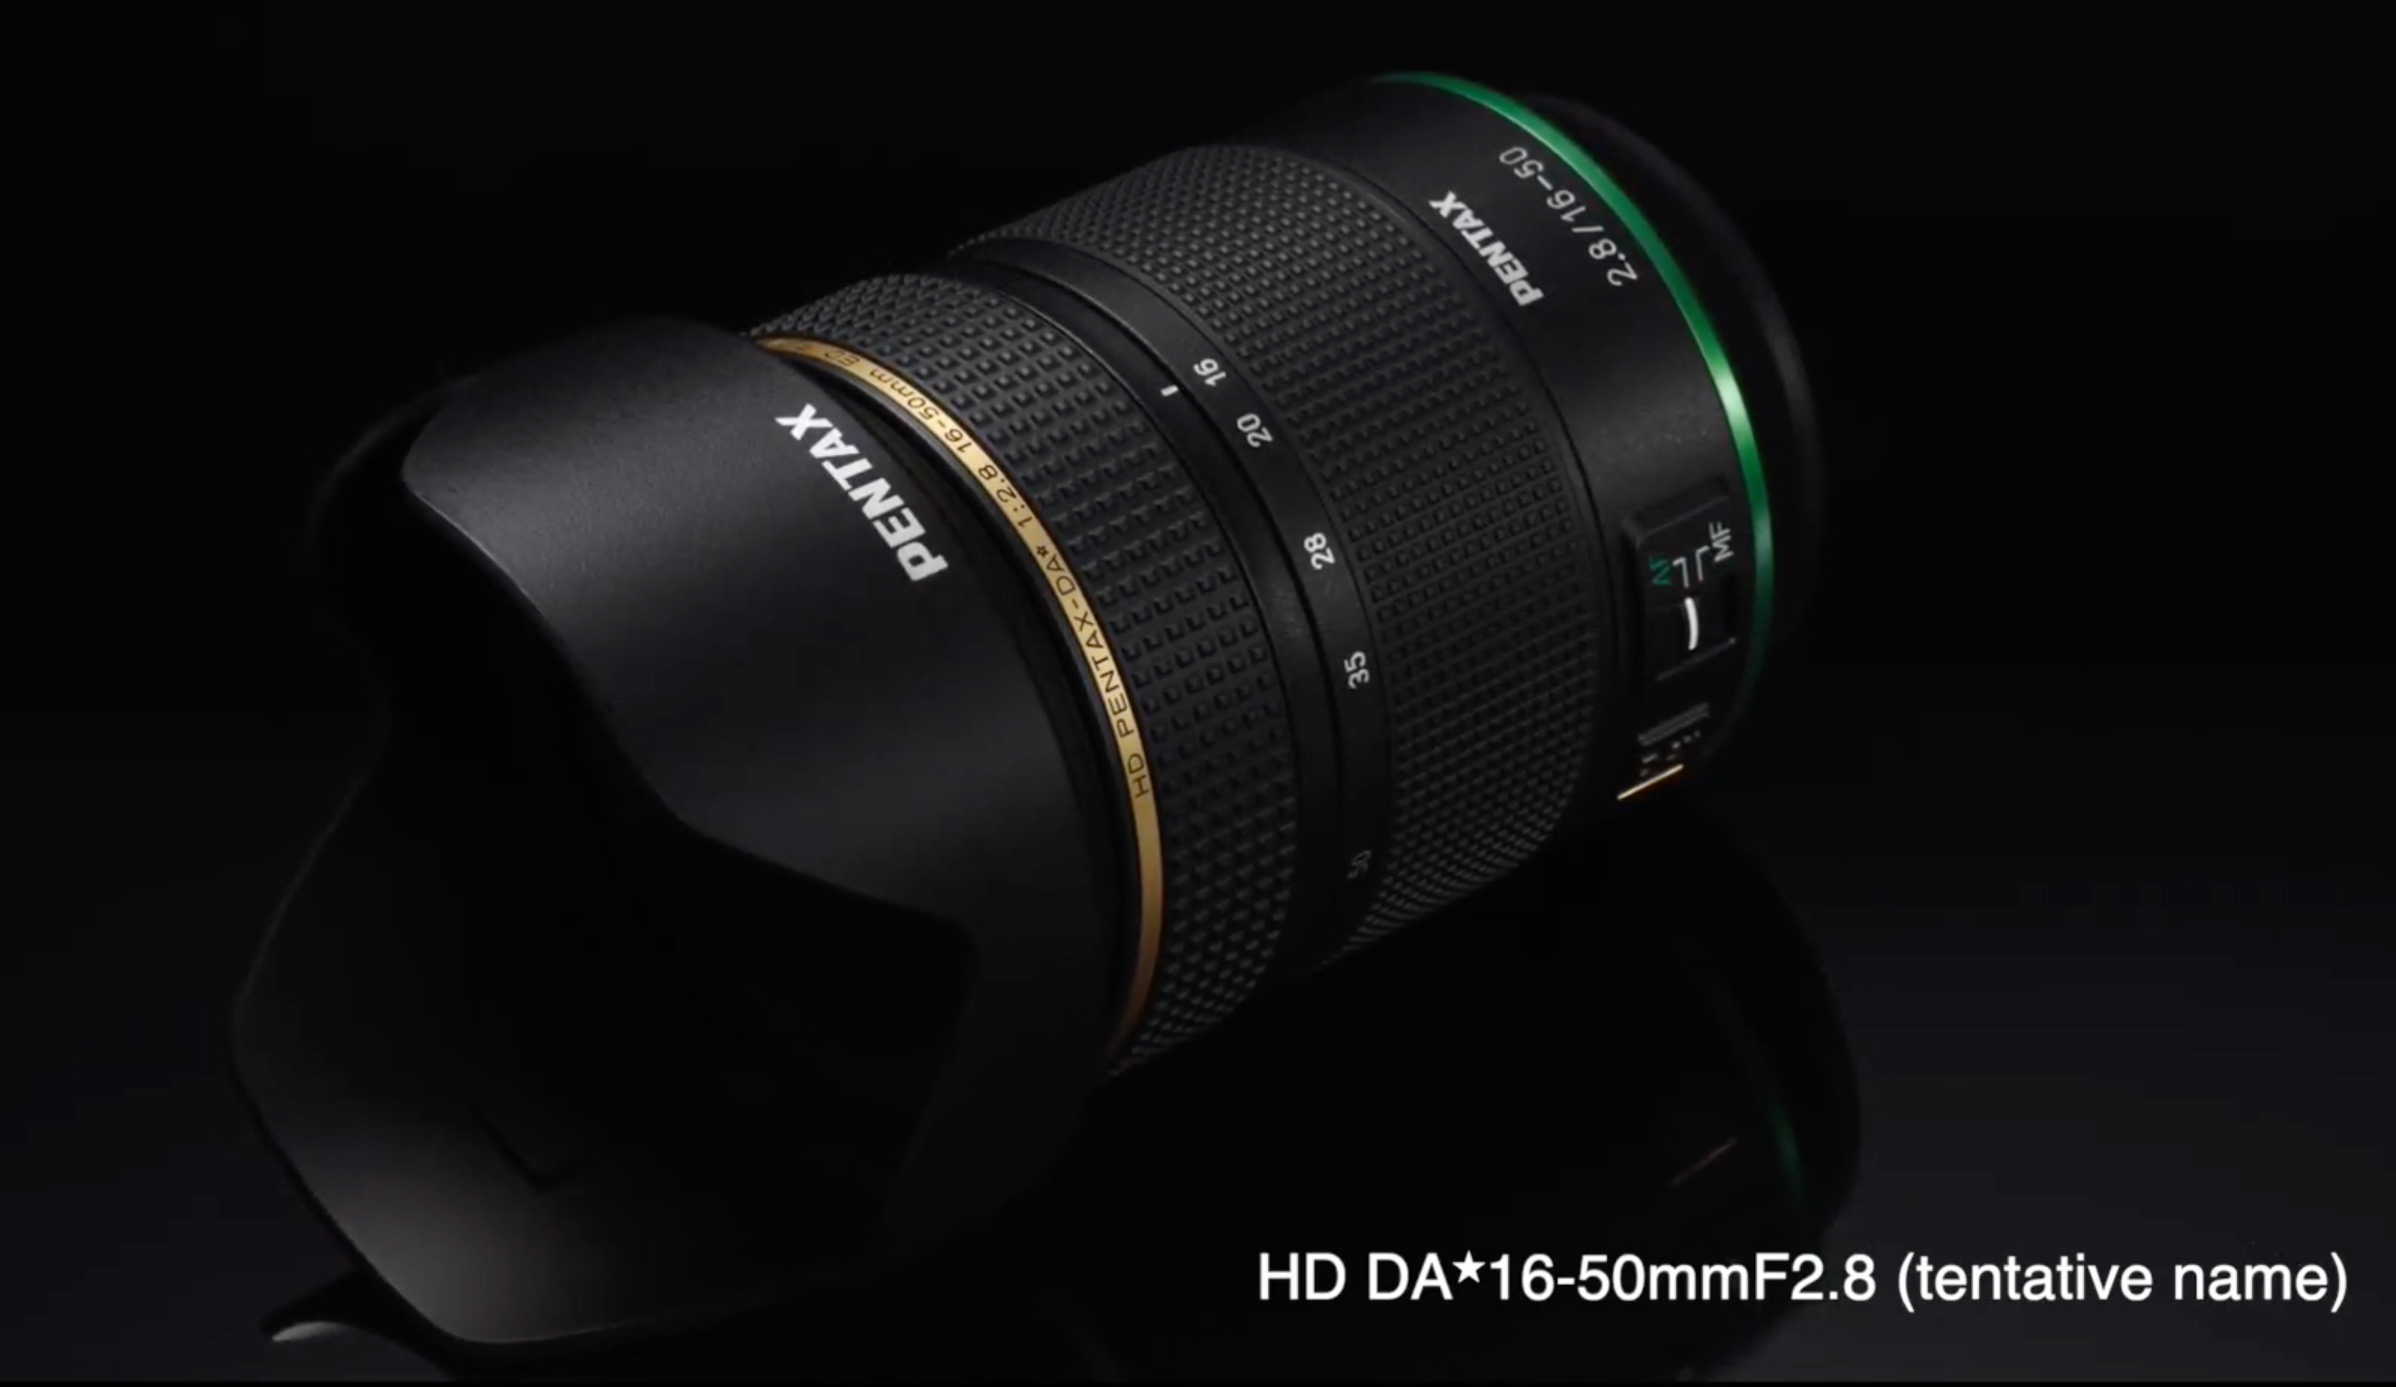 Ricoh giới thiệu flagship DLSR Pentax APS-C mới cùng các ống kính D FA 21mm Limited, DA 16-50mm F2.8 và D FA* 85mm F1.4